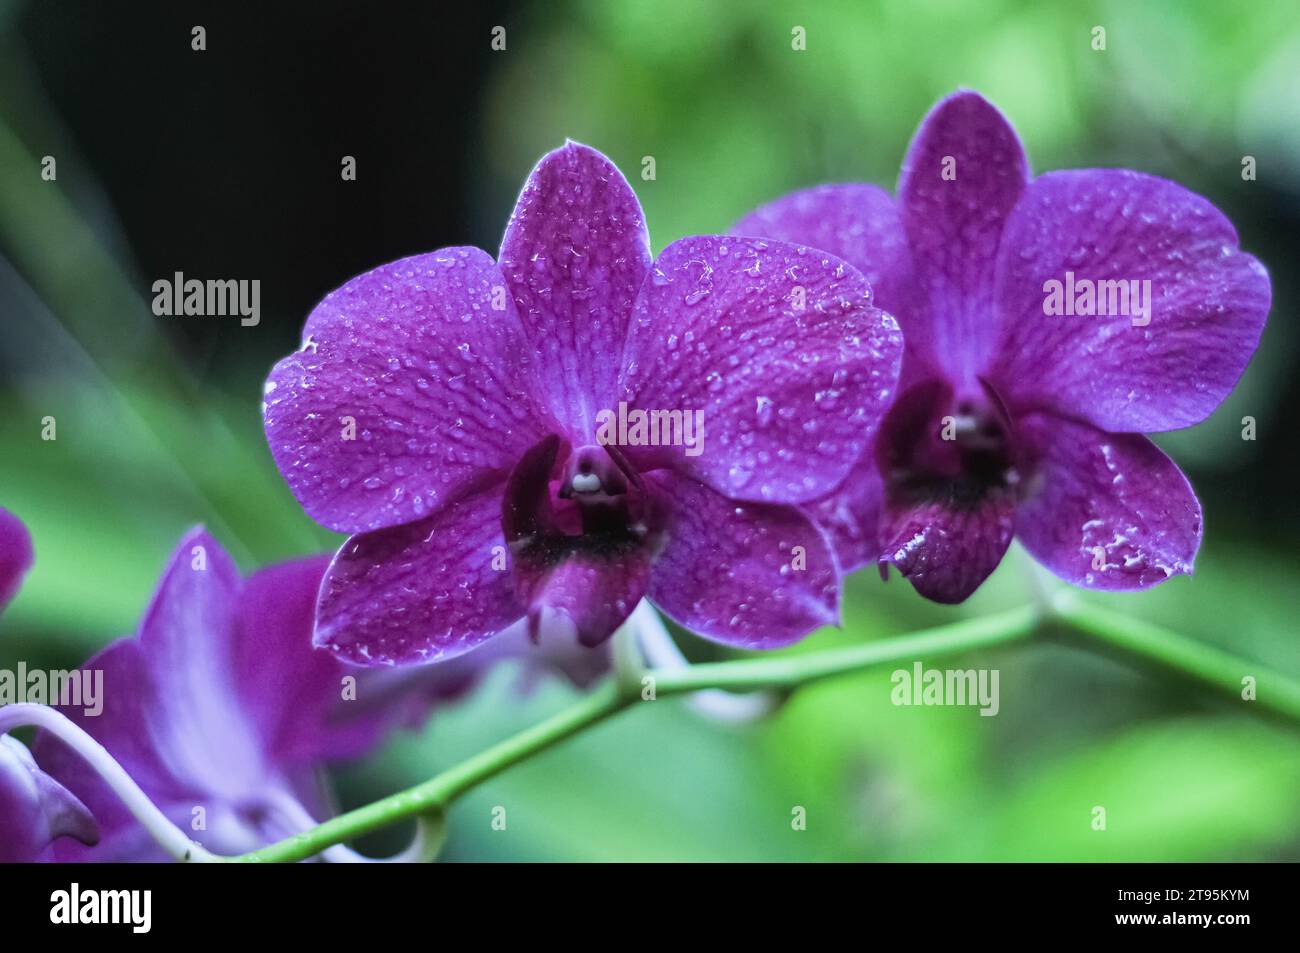 The orchid flower Dendrobium bigibum has purple petals Stock Photo